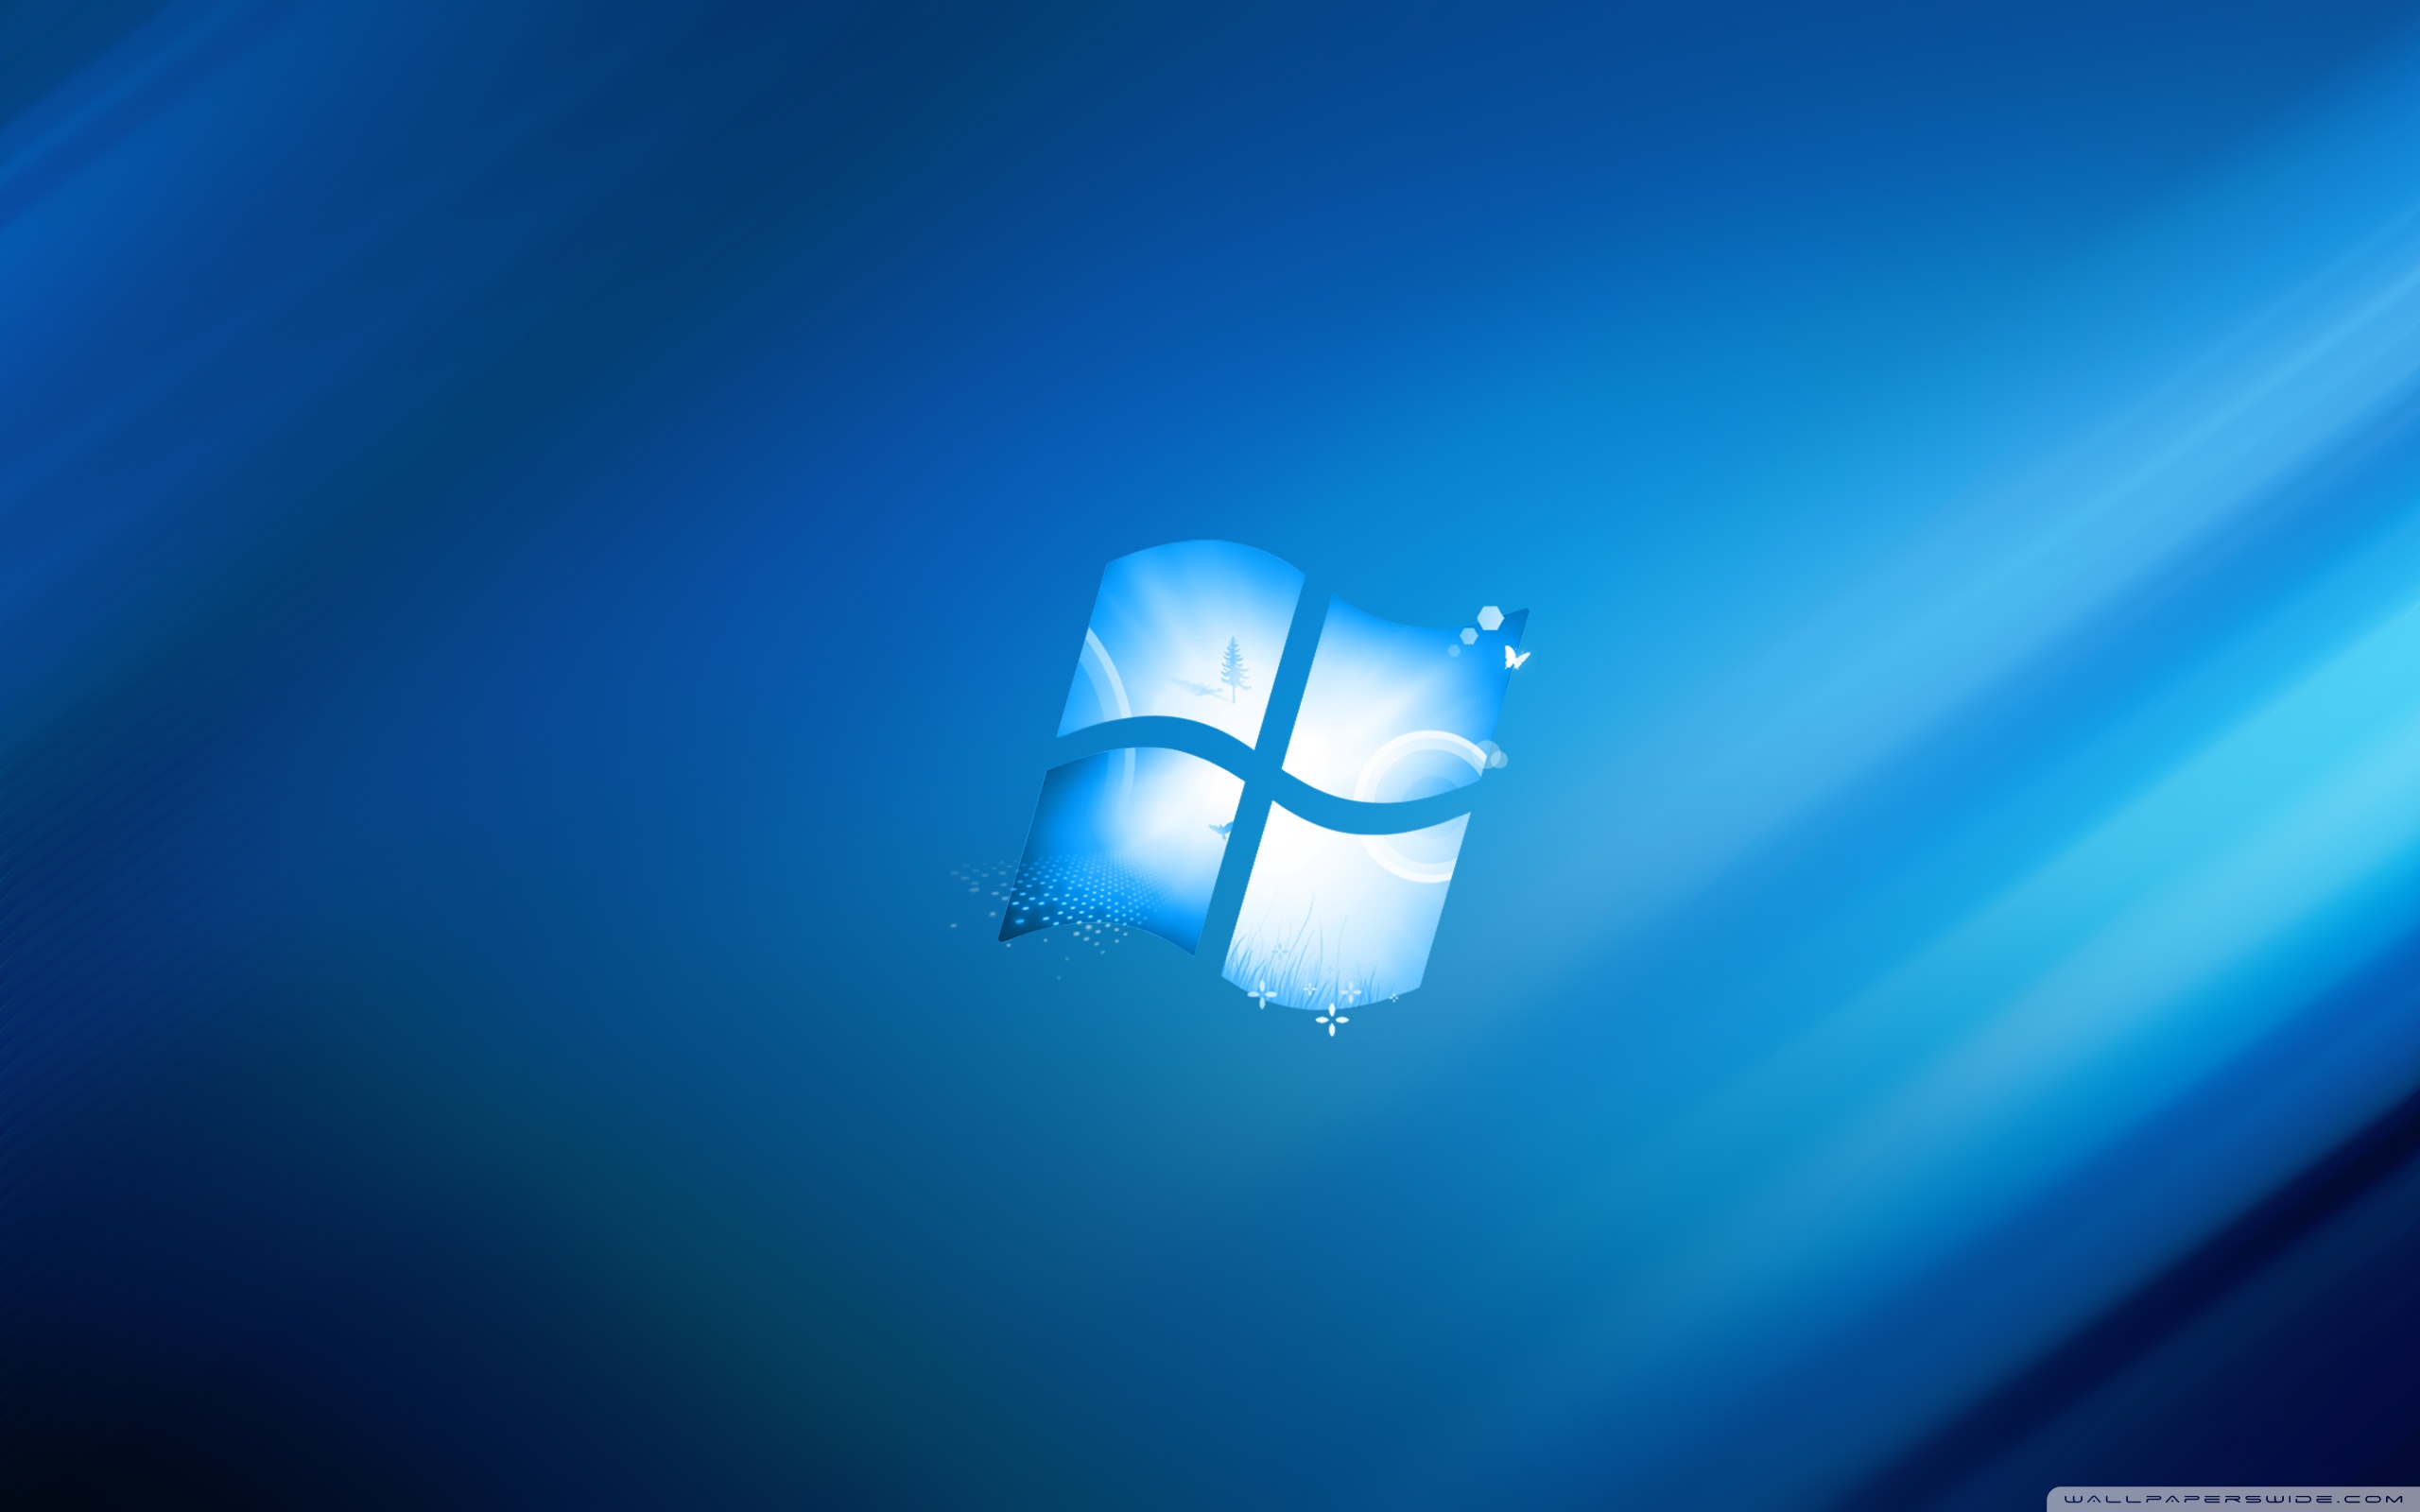 Hãy thưởng thức hình nền màn hình desktop với Windows 8 tuyệt đẹp. Với những hình nền độc đáo, mang đến cho bạn trải nghiệm hiện đại và mới lạ cho thiết bị của mình.